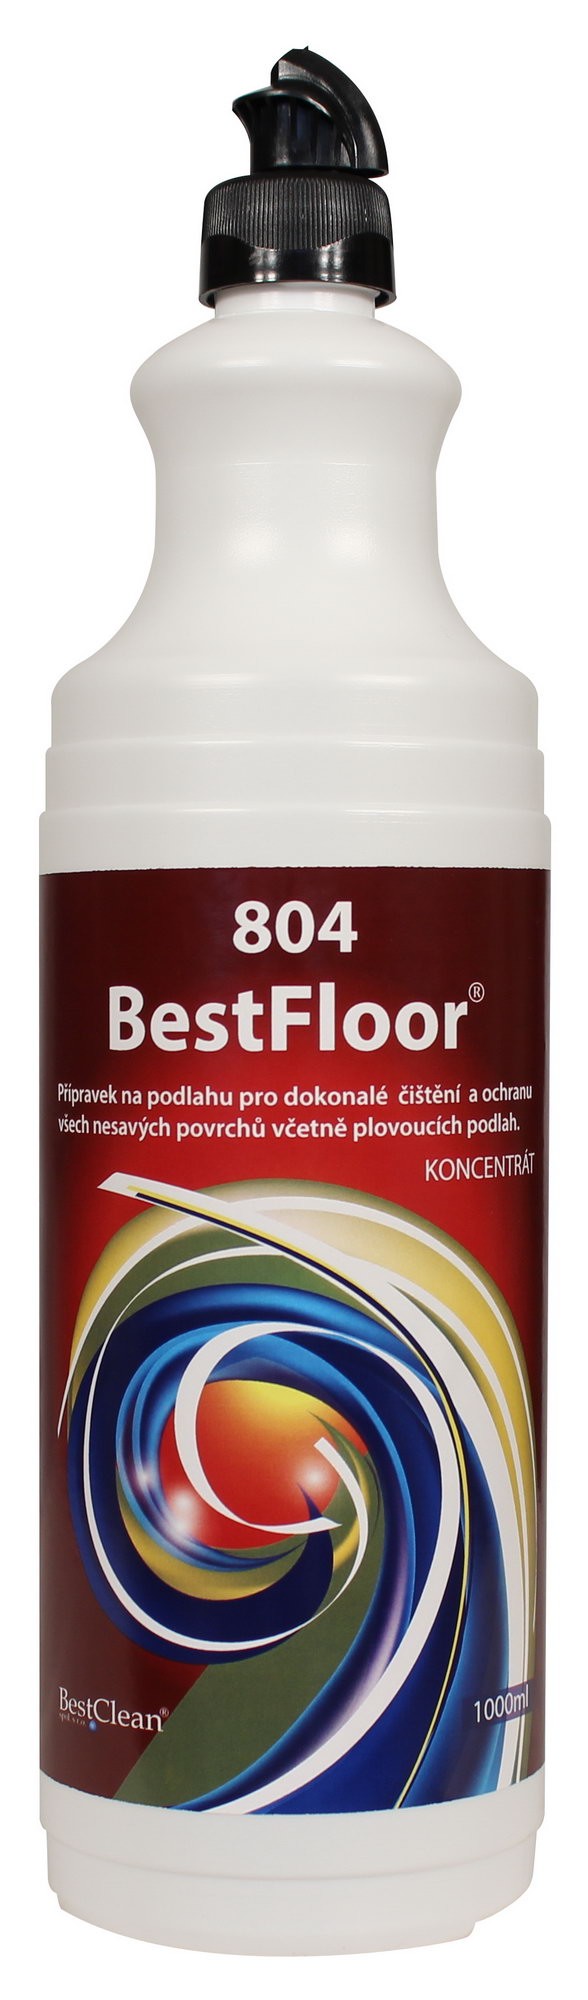  804 BestFloor 1L  - podlahy s leskem koncentrát